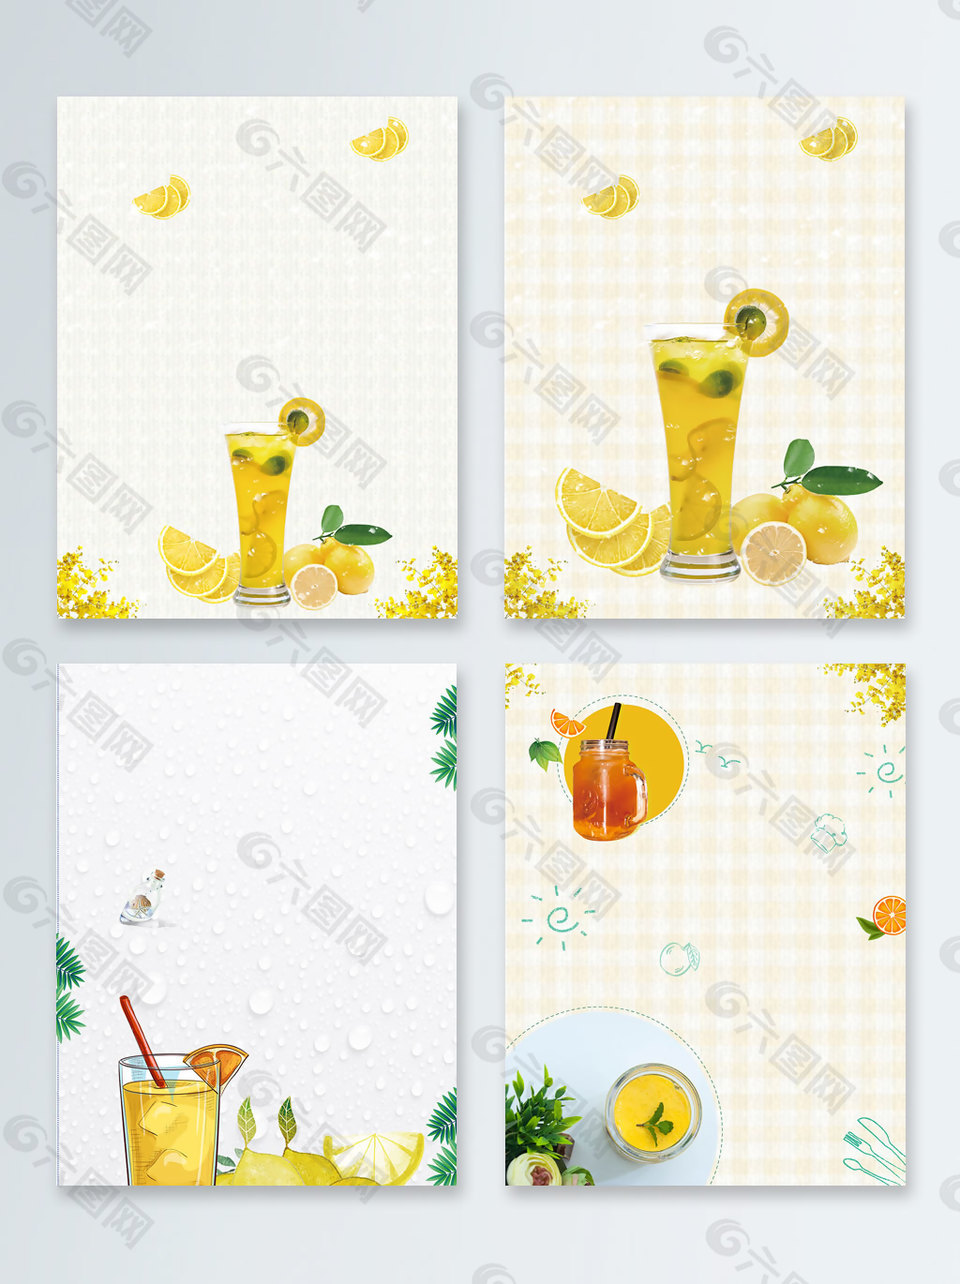 橙汁冰镇夏季促销广告背景